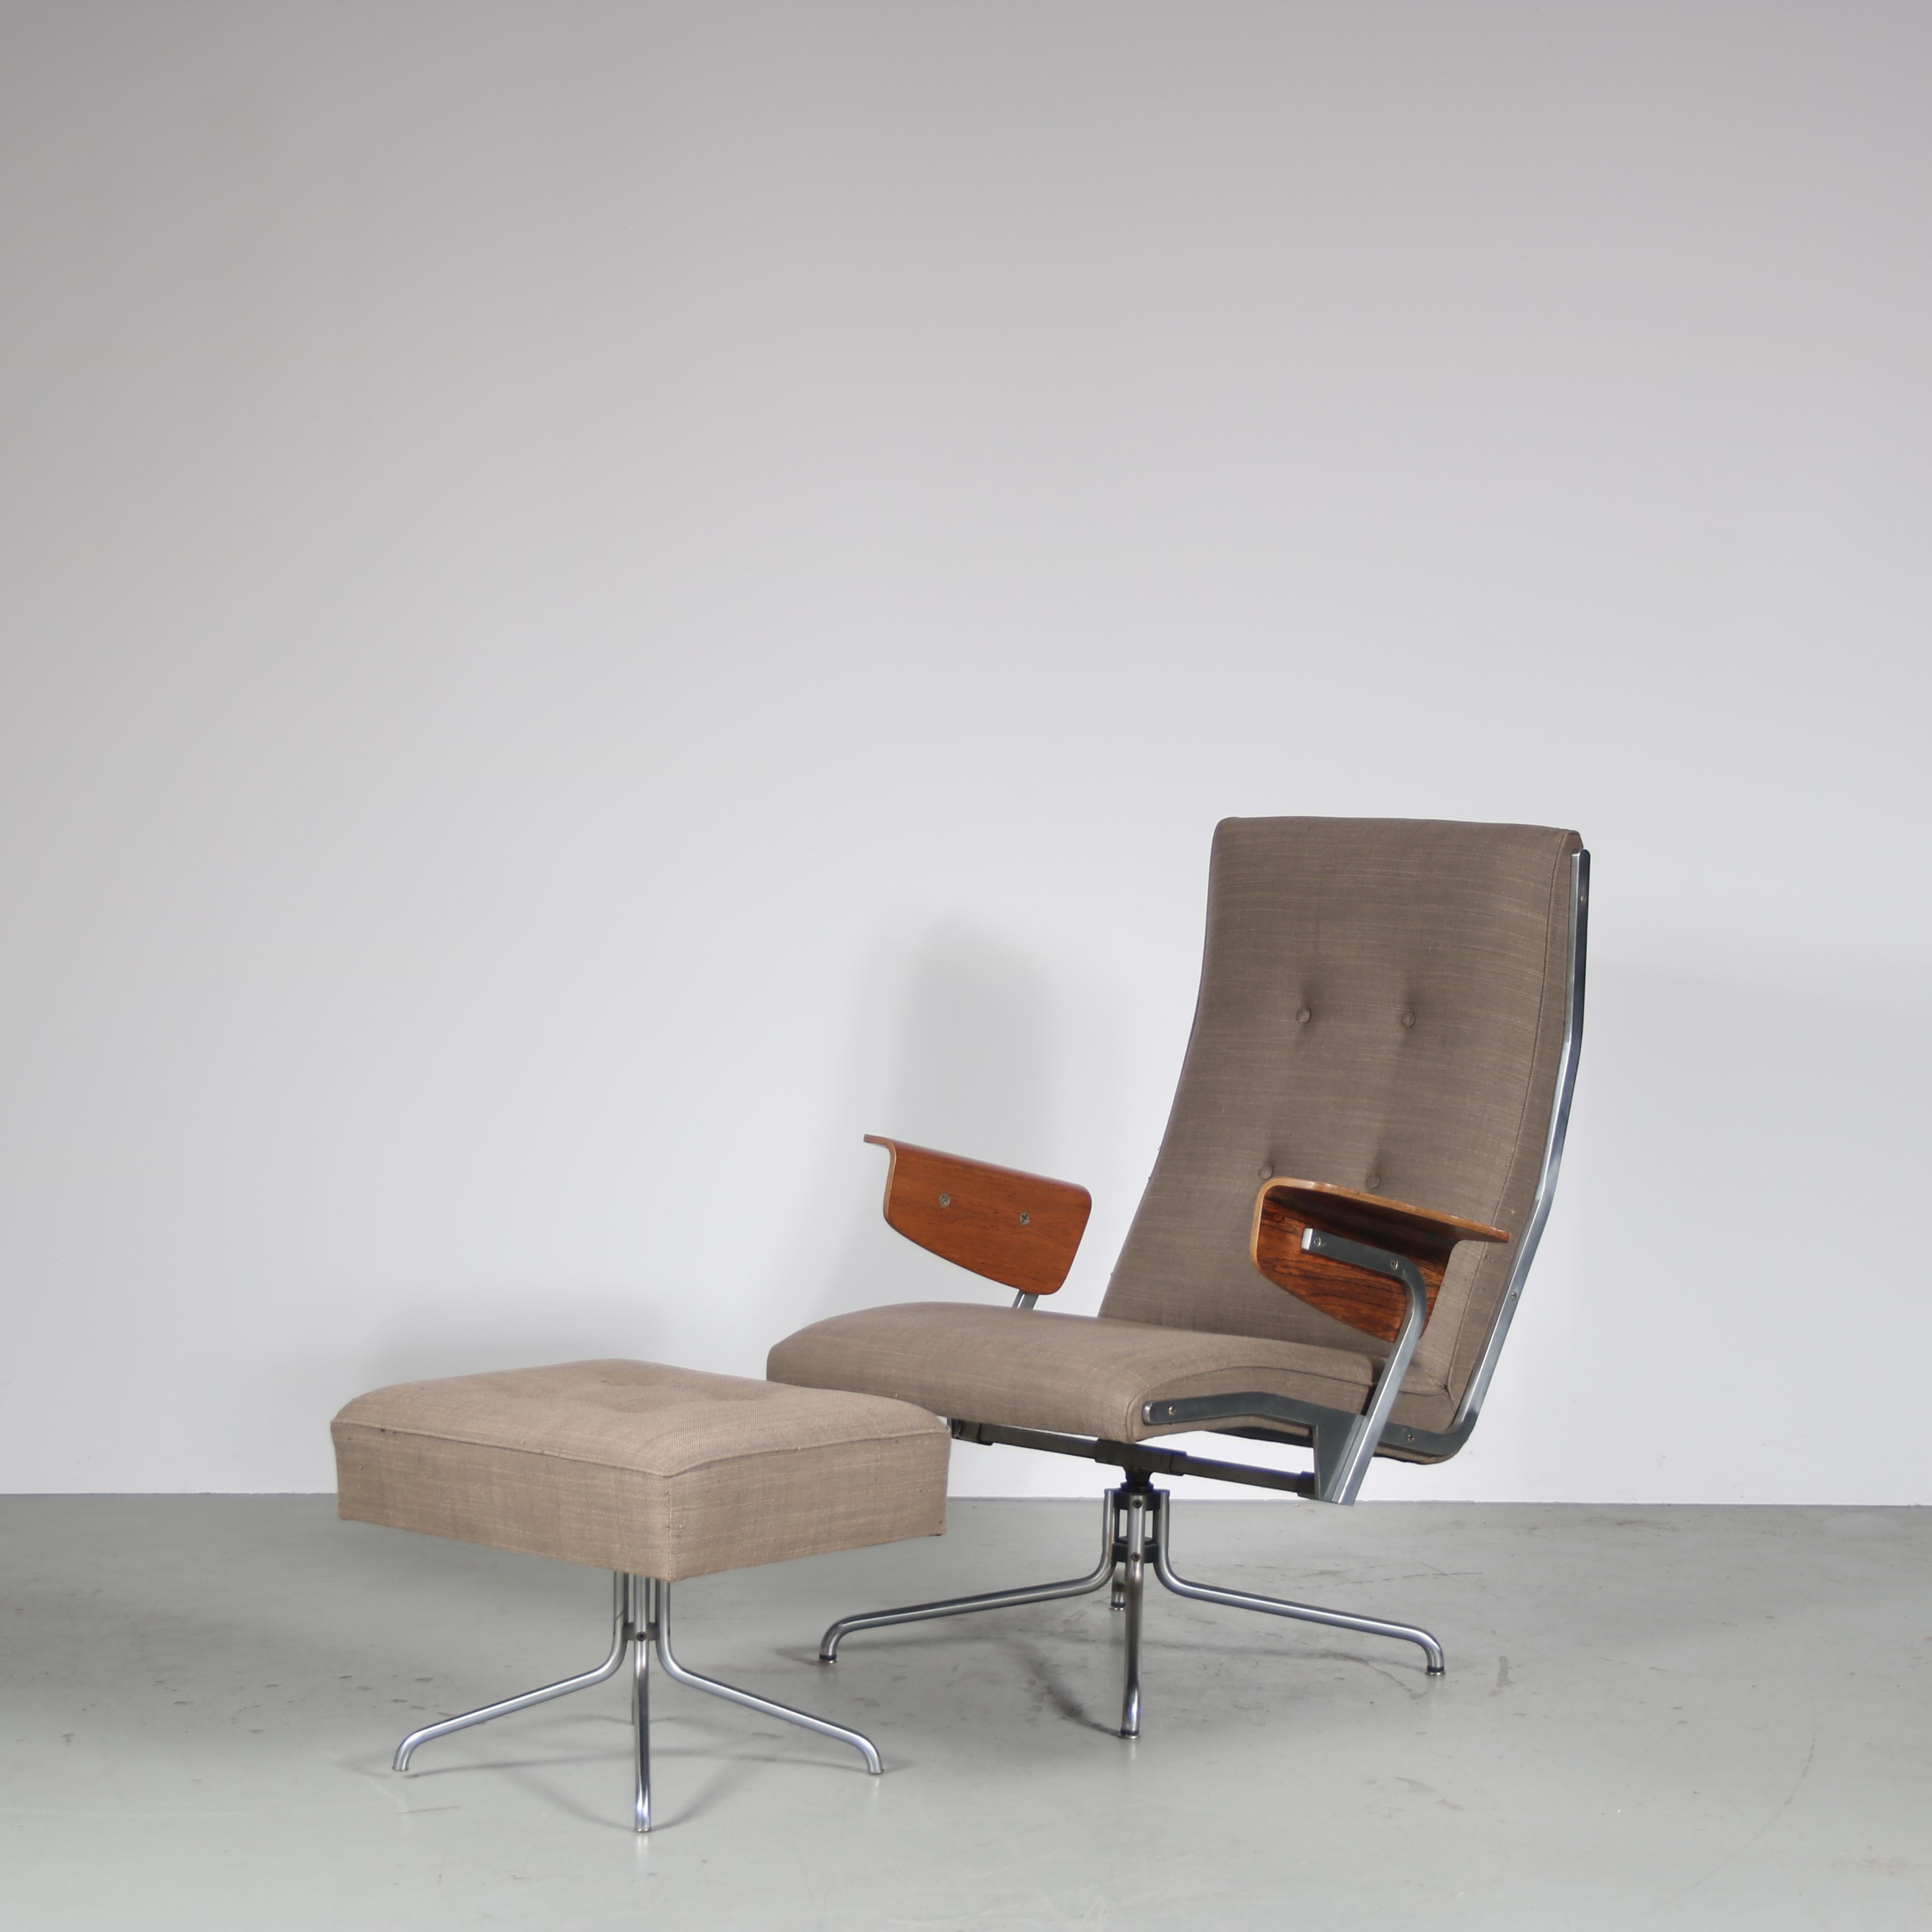 

Ein bemerkenswertes Sessel- und Hocker-Set aus den 1960er Jahren, das sich durch exquisites Design und Handwerkskunst auszeichnet!

Dieser außergewöhnliche Loungesessel strahlt mit seinem verchromten Metalldrehgestell, das eine mühelose Bewegung